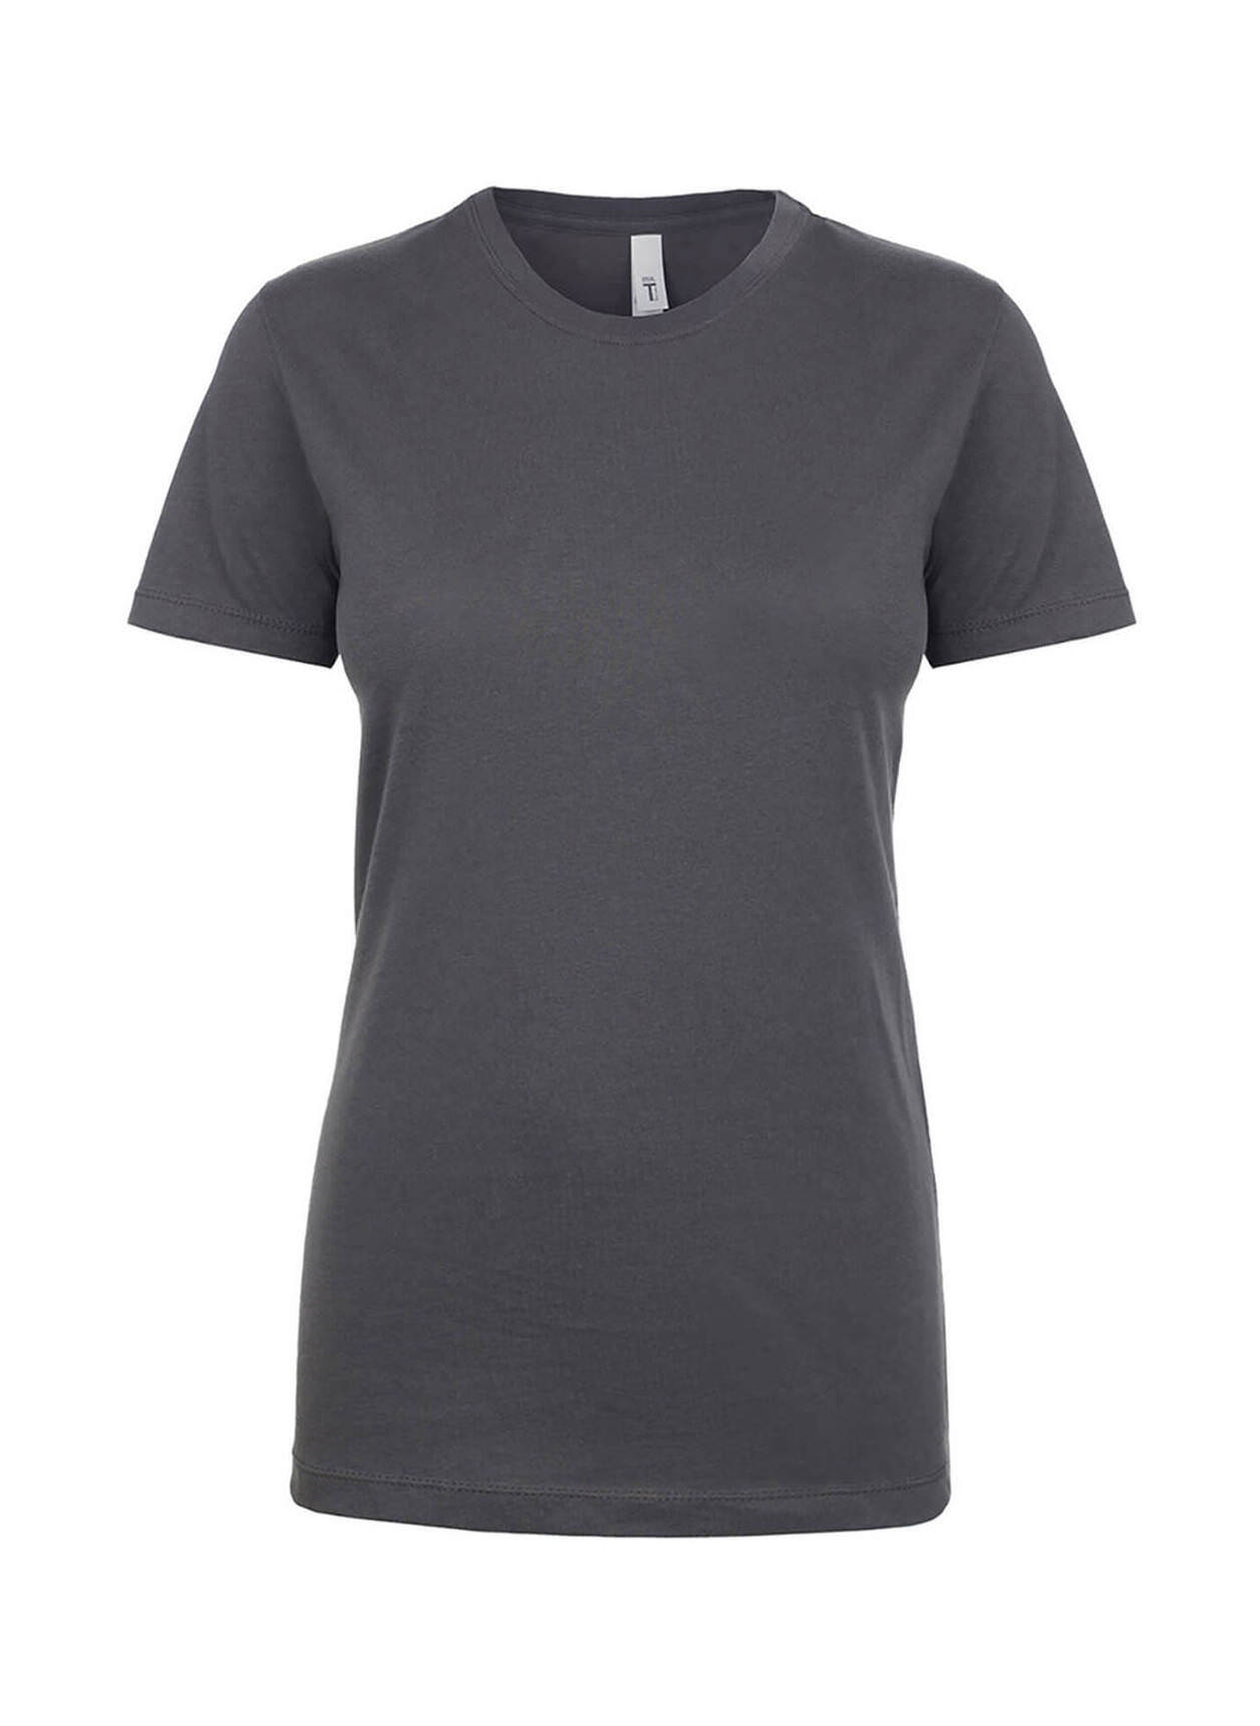 Next Level Women's Dark Gray Ideal T-Shirt